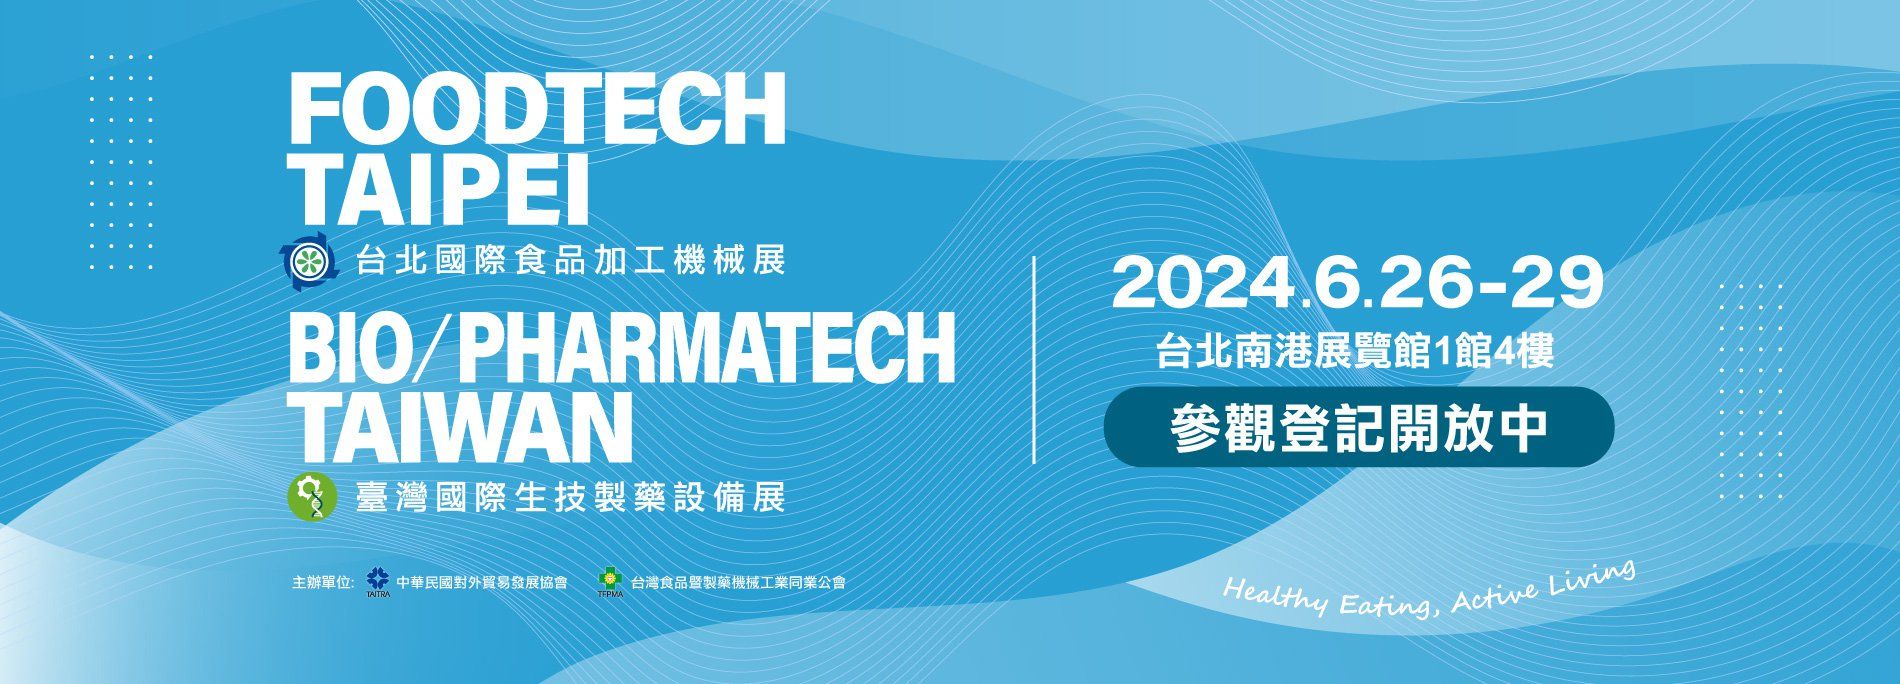 达鑫机械将参加2024年台北国际食品加工机械展